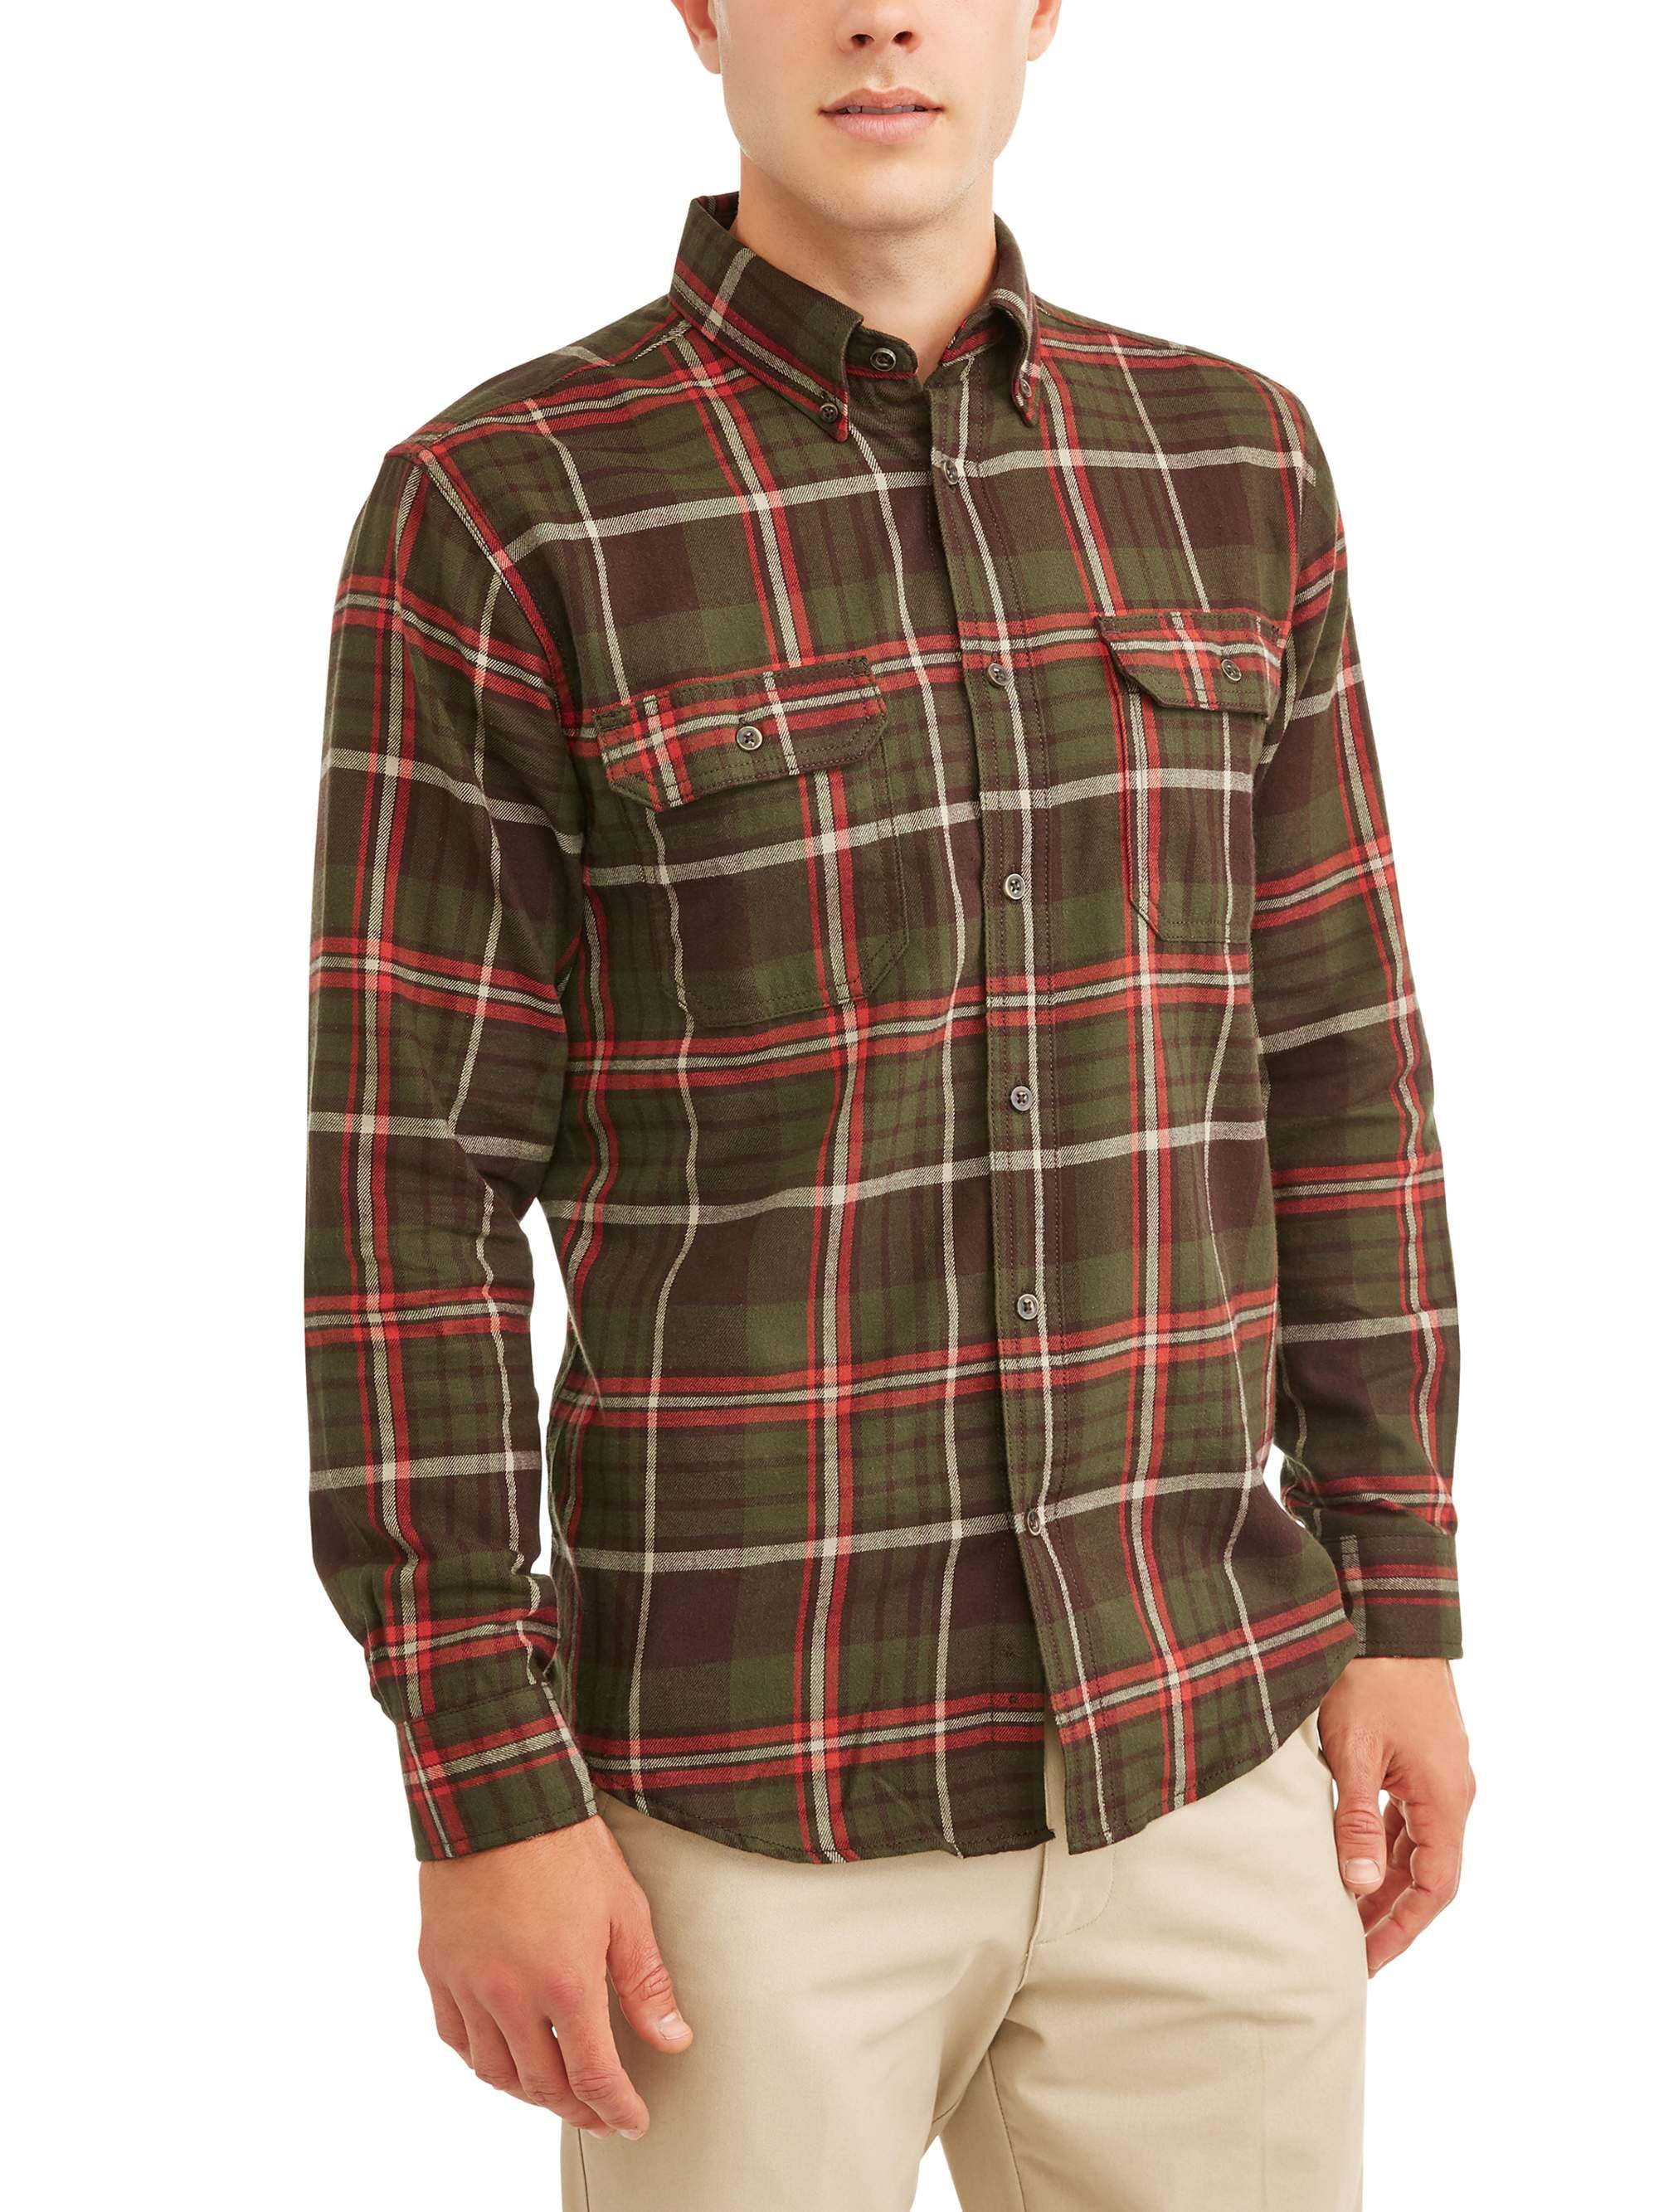 Men's Long Sleeve Flannel Shirt, Up To 5XL - Walmart.com